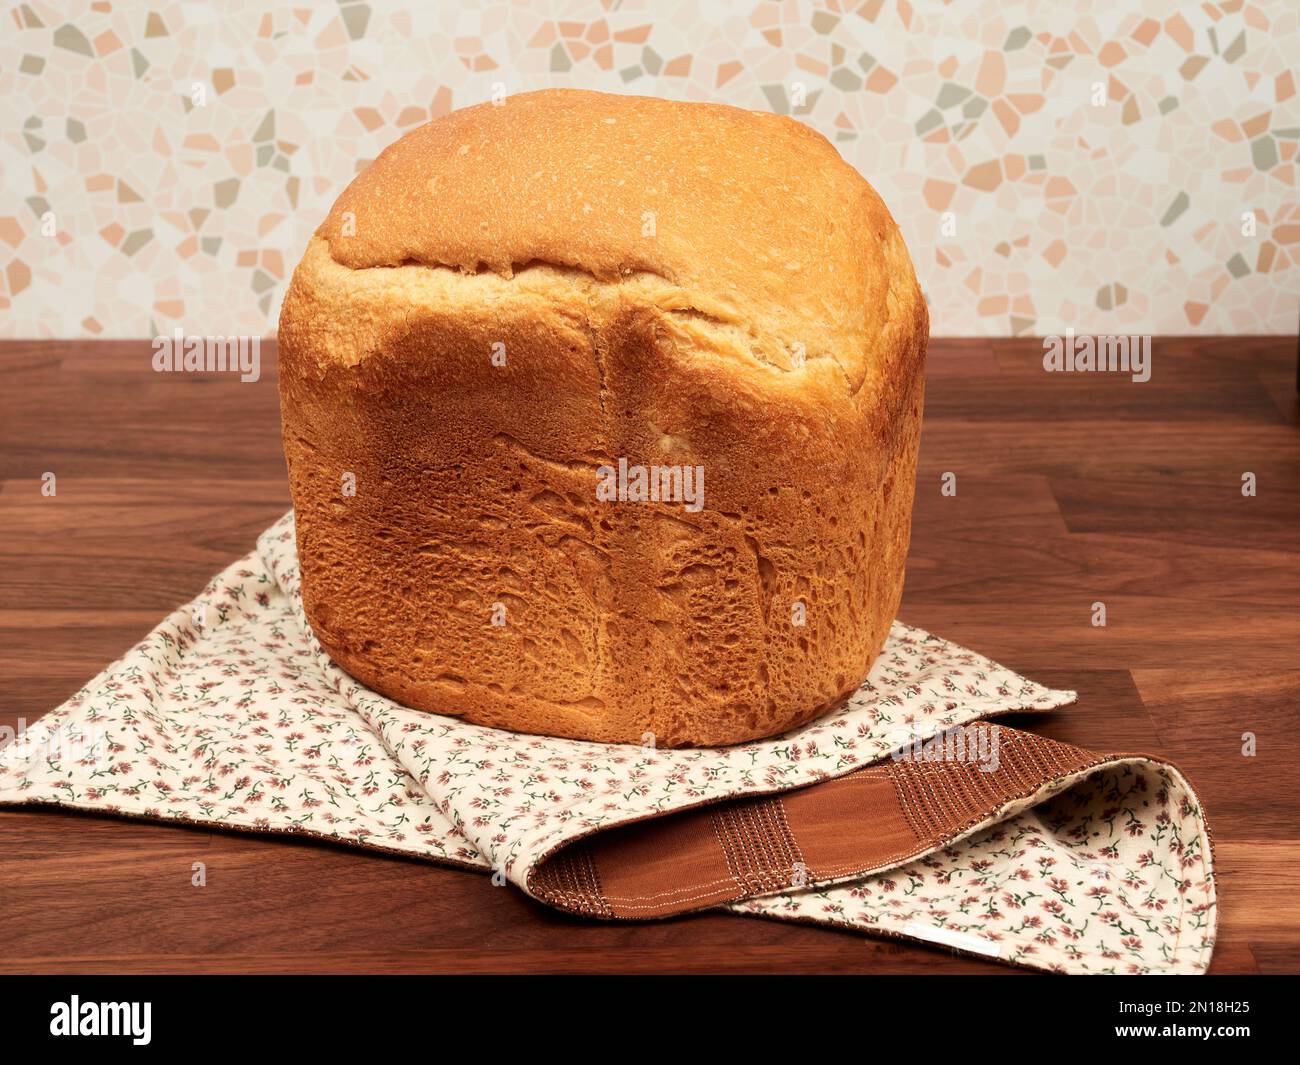 Hausgemachtes Brot mit einer Brotmaschine auf einer Serviette auf einem Walnusstisch Stockfoto